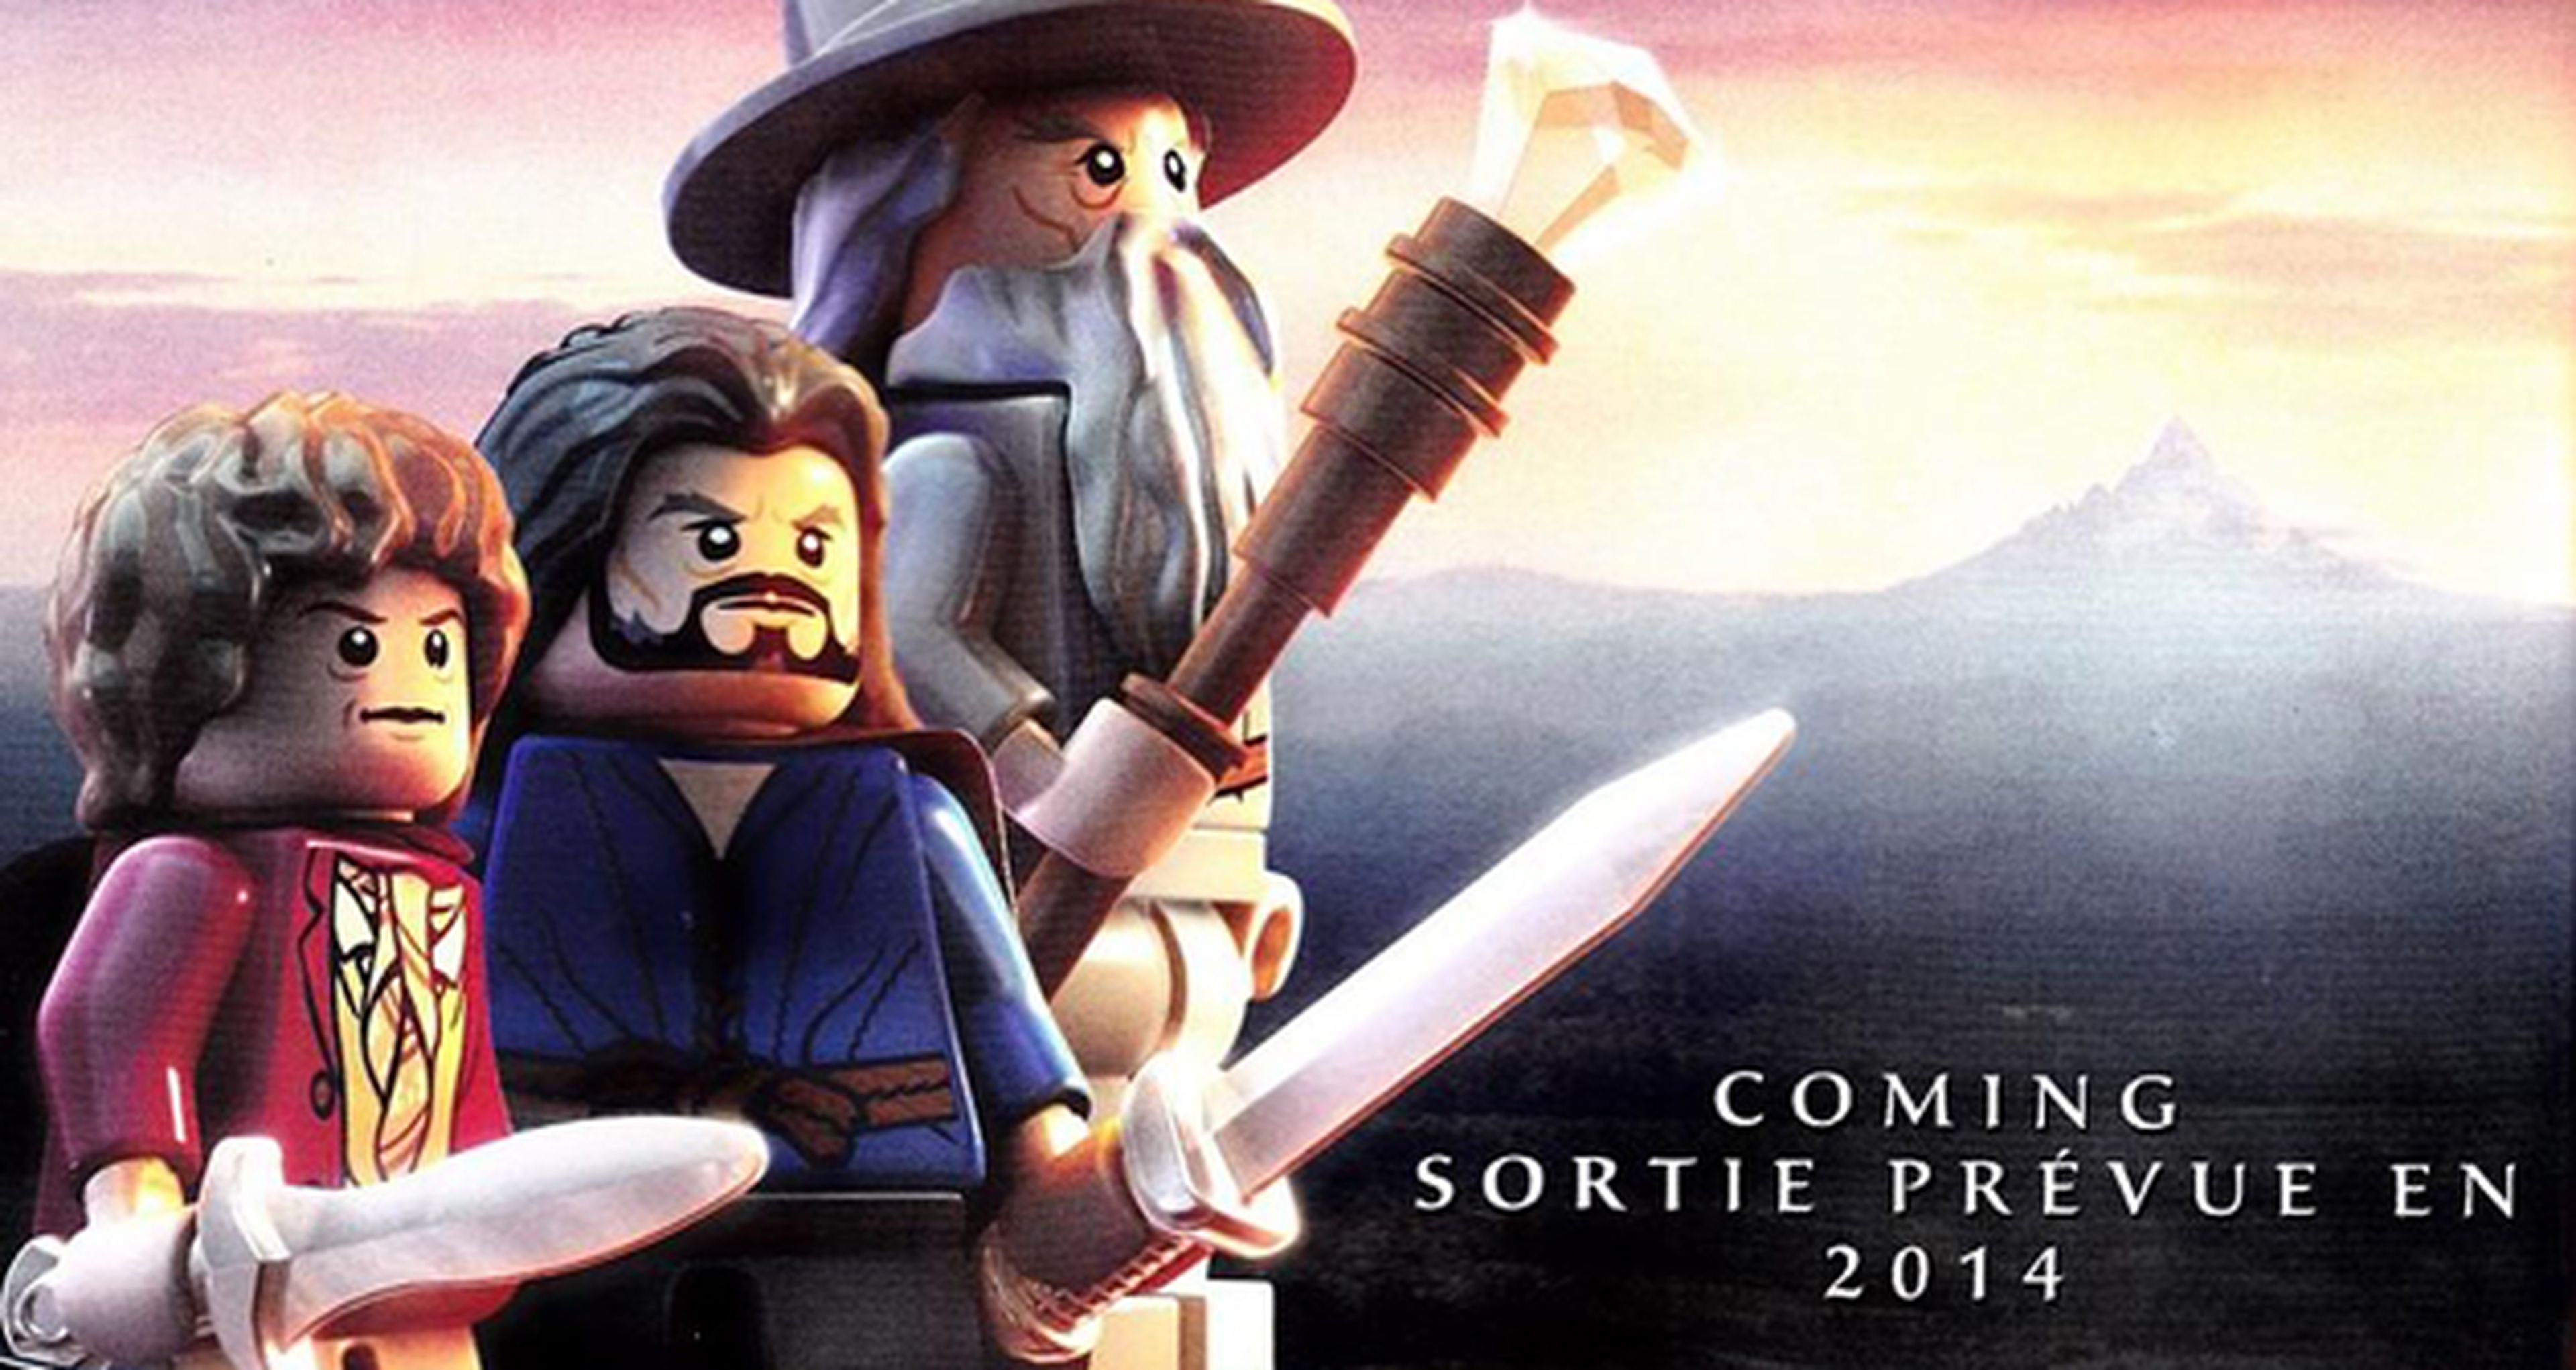 La versión Lego de El Hobbit para 2014